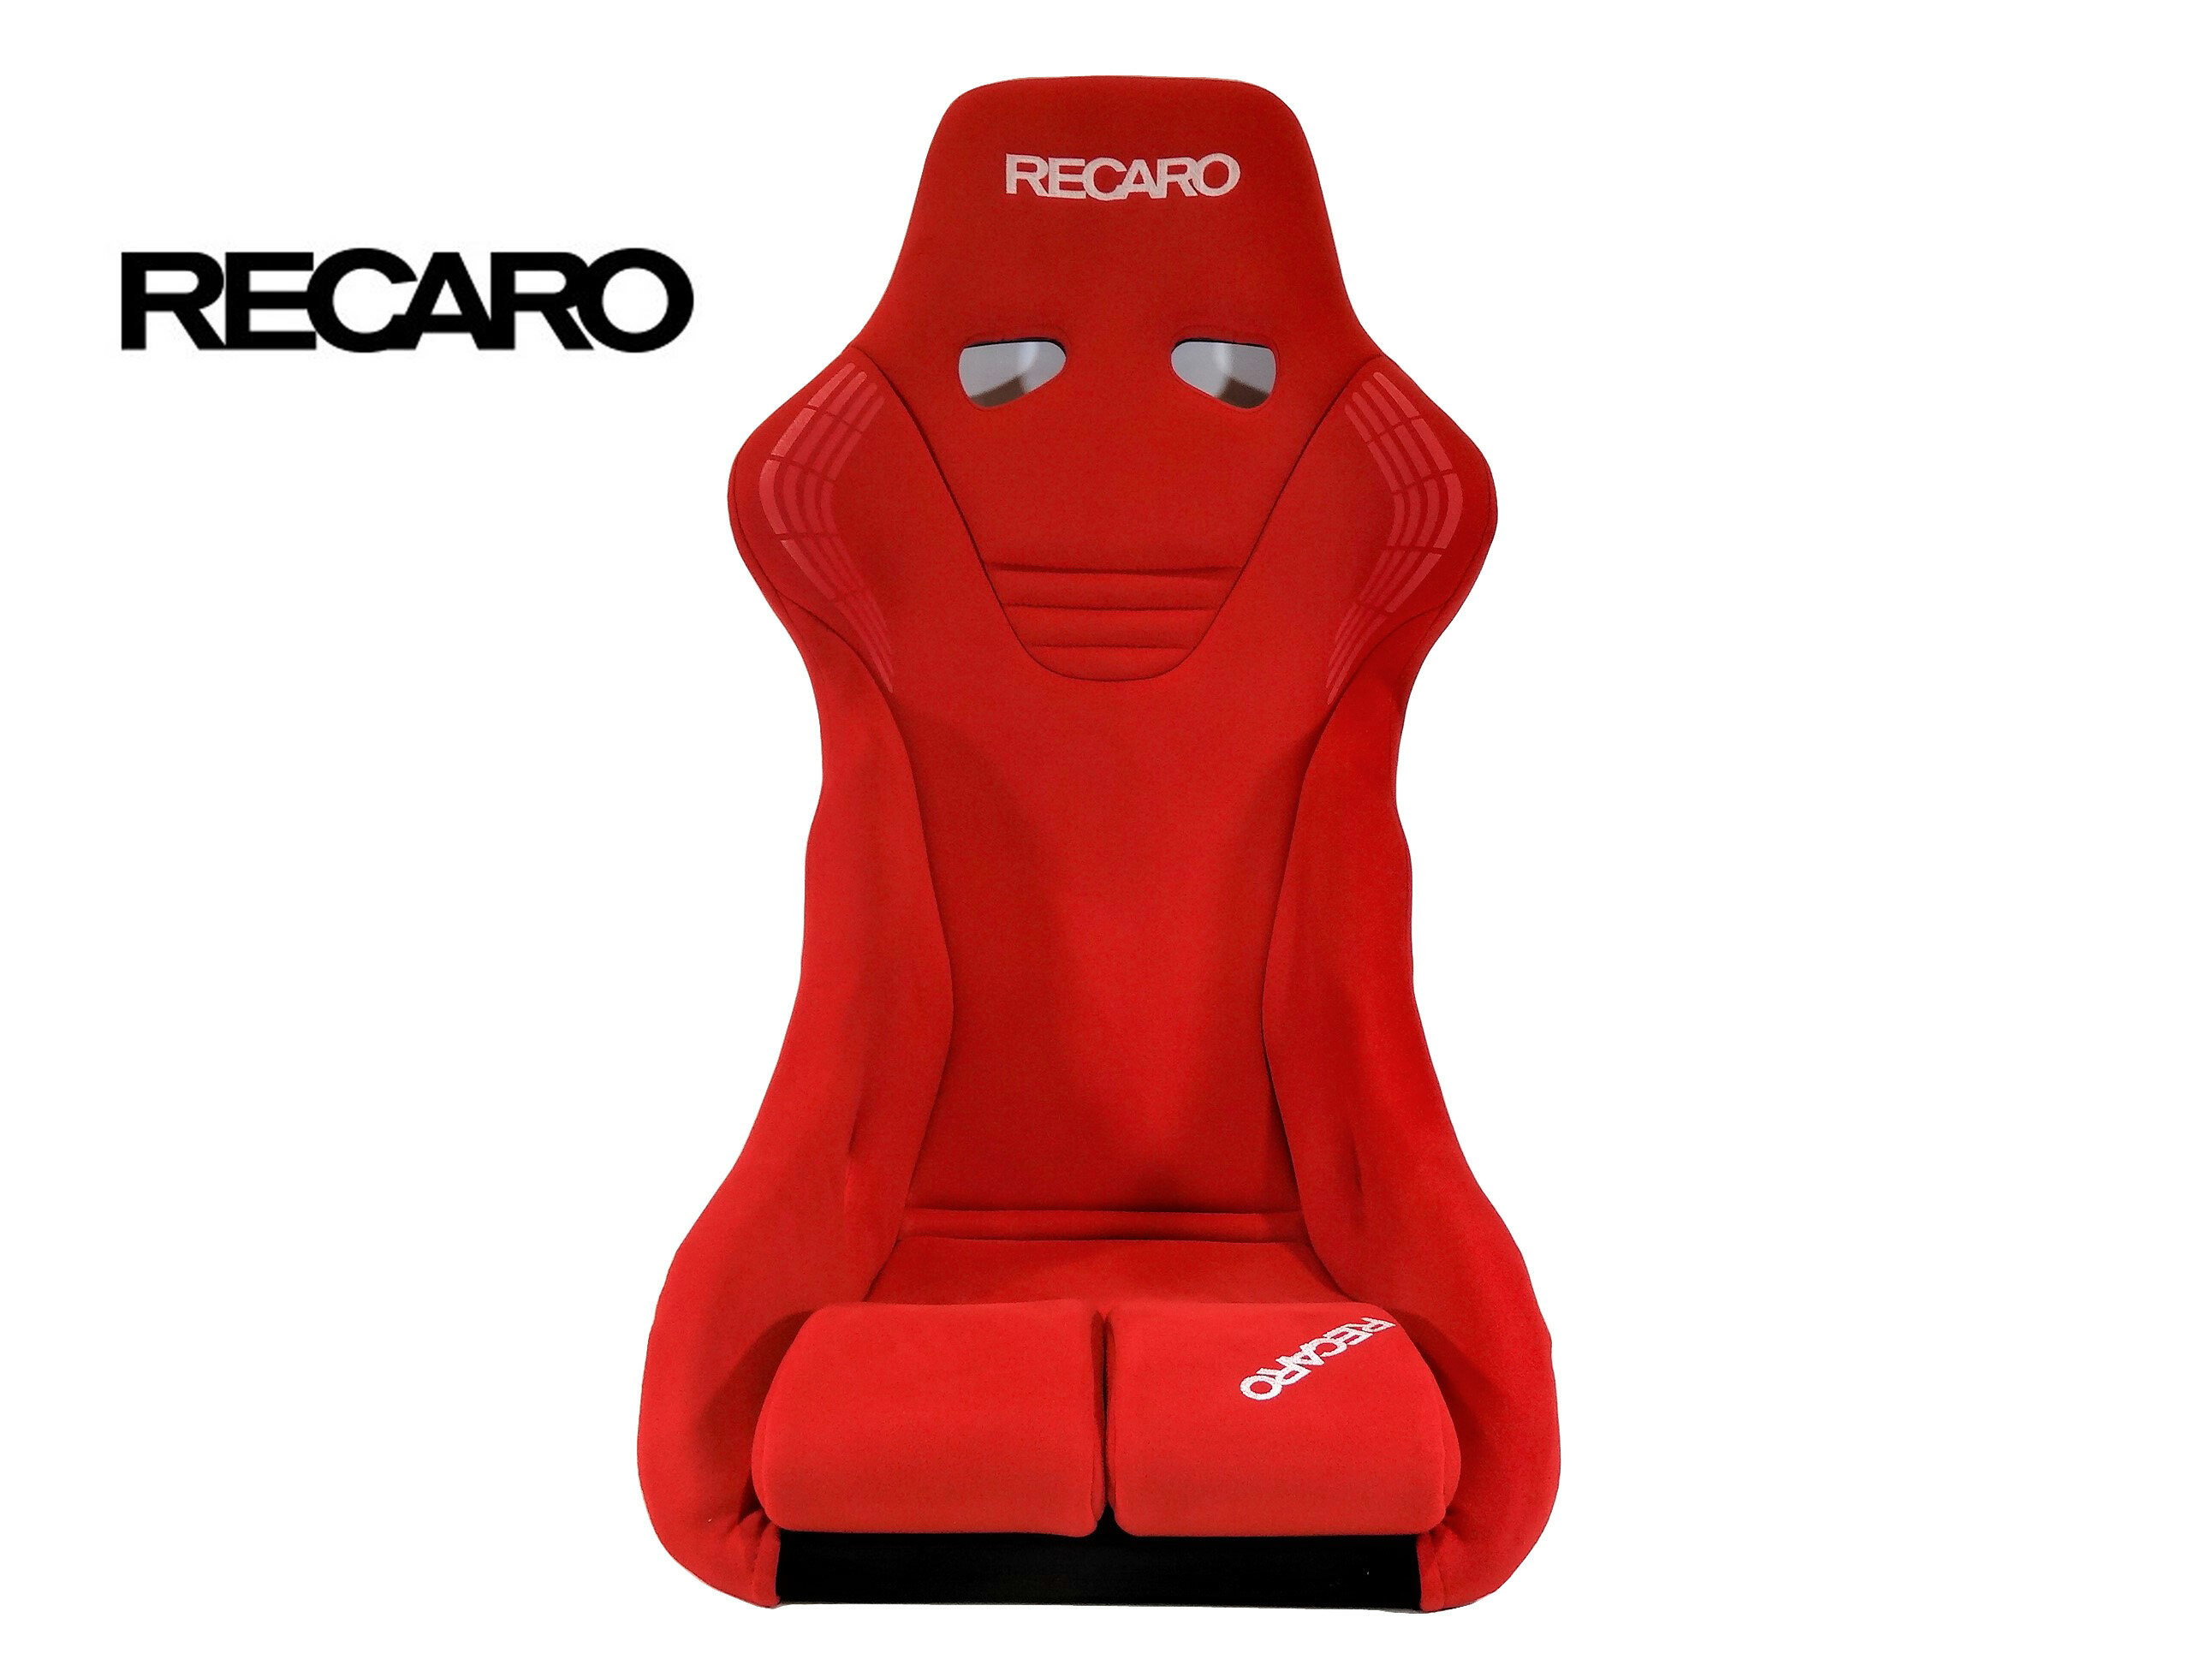 RECARO (レカロ) RS-GS カムイ レッド FIA認証 + オリジナル シート ベルトガイド